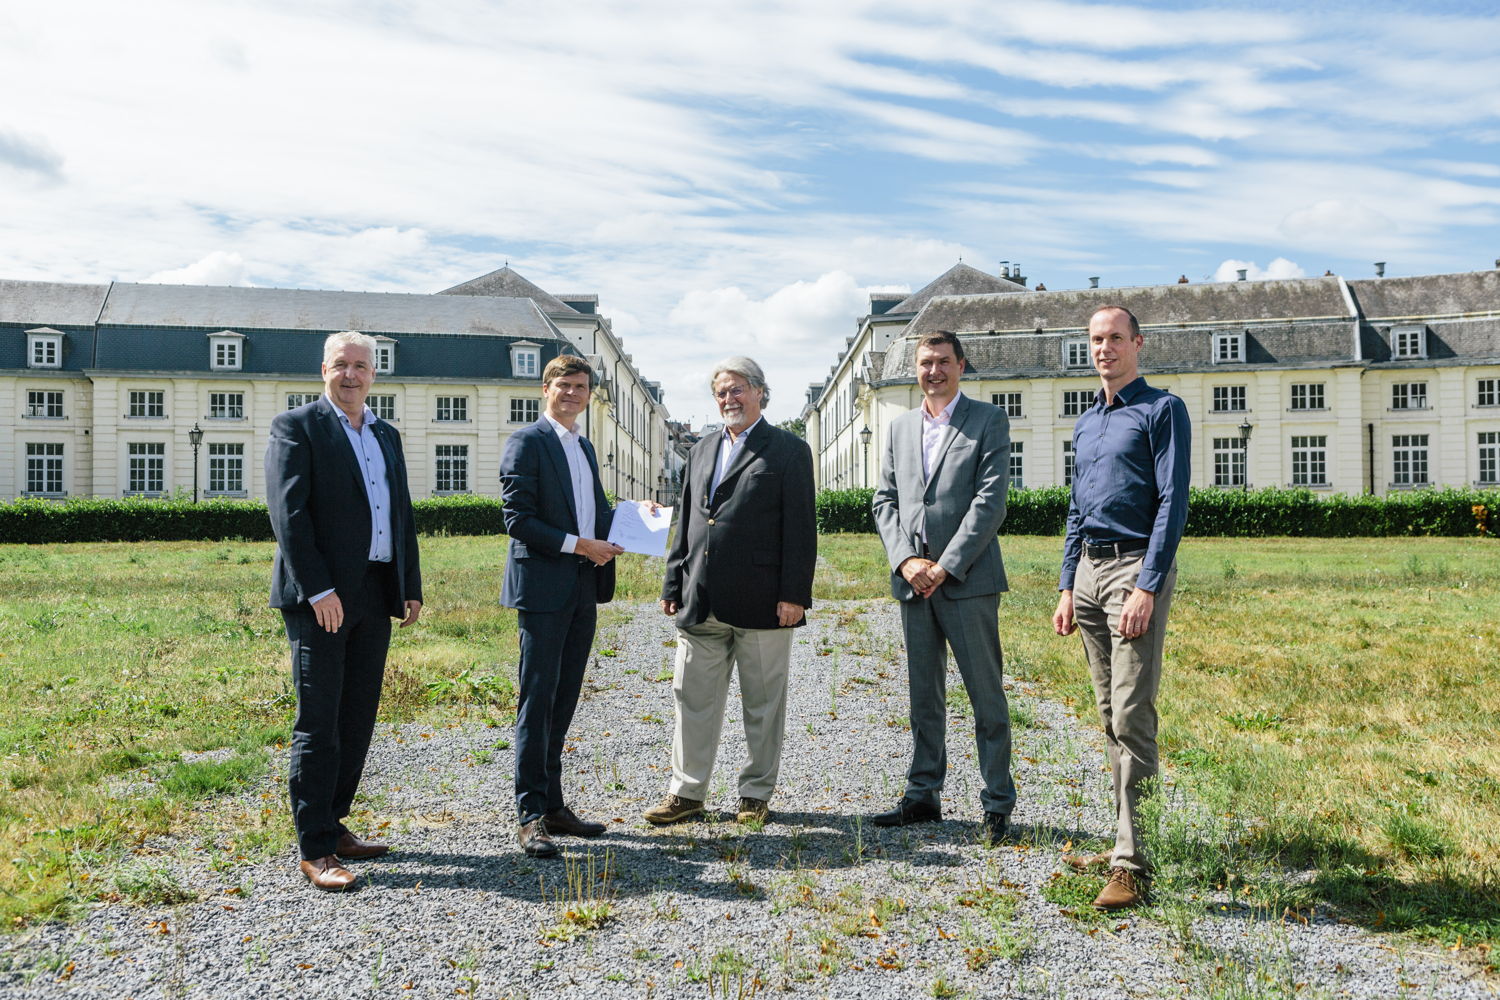 Jan Spooren (Burgemeester Tervuren), Davy Demuynck (ION), John Martin (Martin’s Hotels), Christophe Voet (Martin’s Hotels) en Steven Adons (PMV).